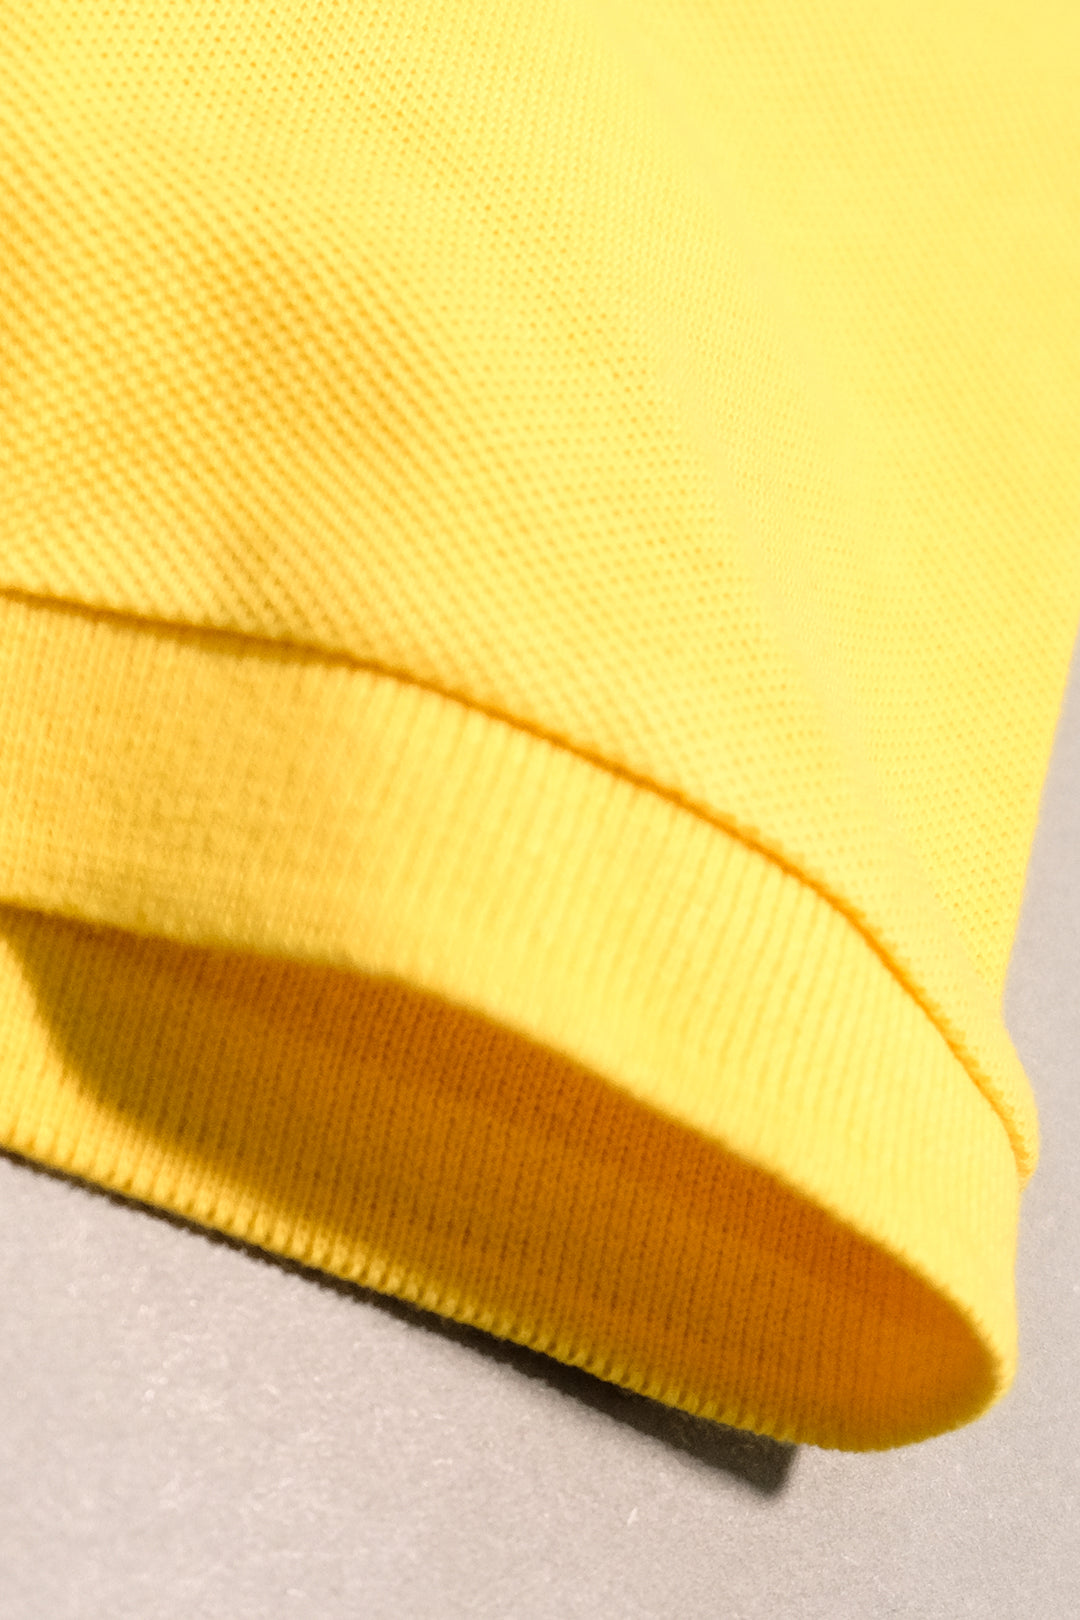 Tri-Color Yellow Polo (Plus Size) - P21 - MP0043P